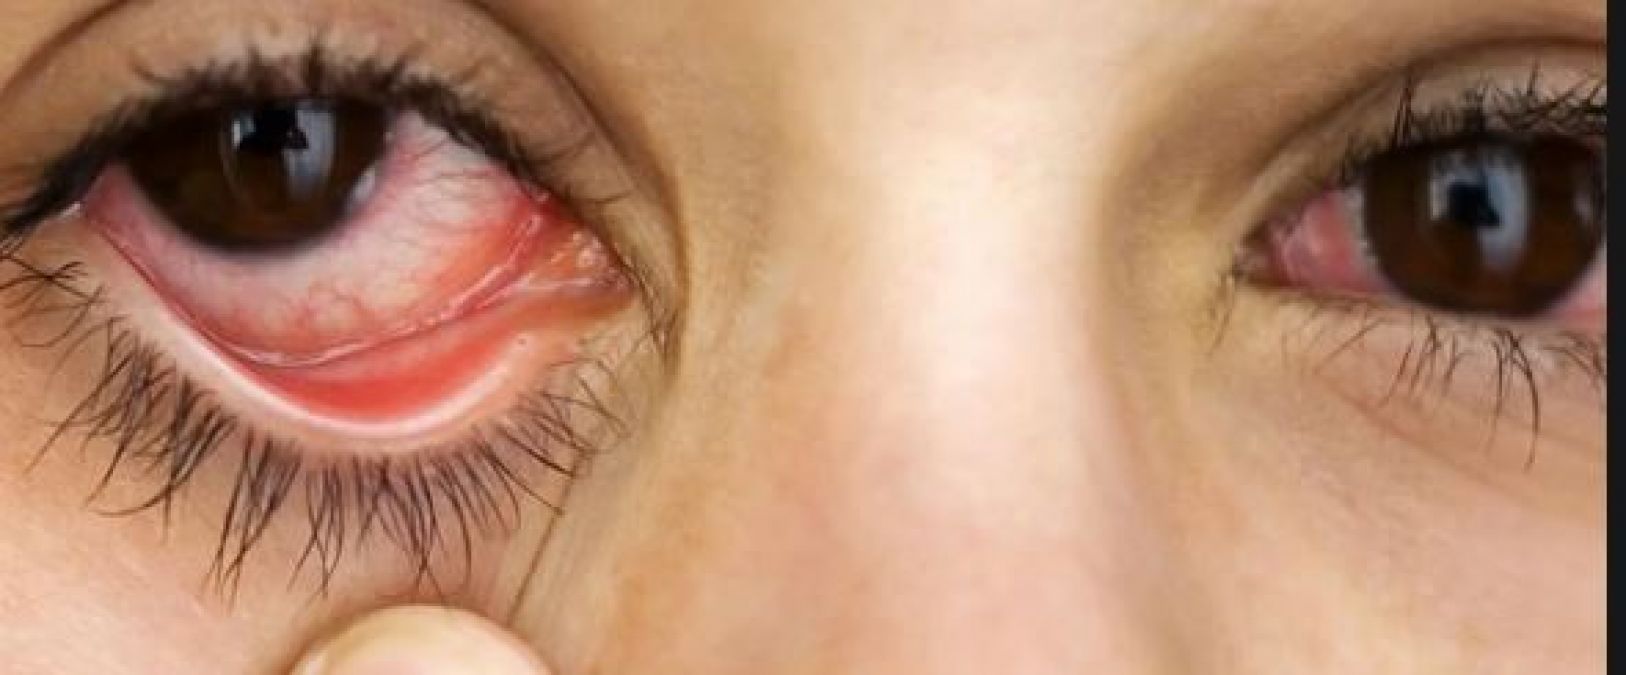 सुअर की त्वचा से लौटी 20 मरीजों की आंखों की रोशनी!